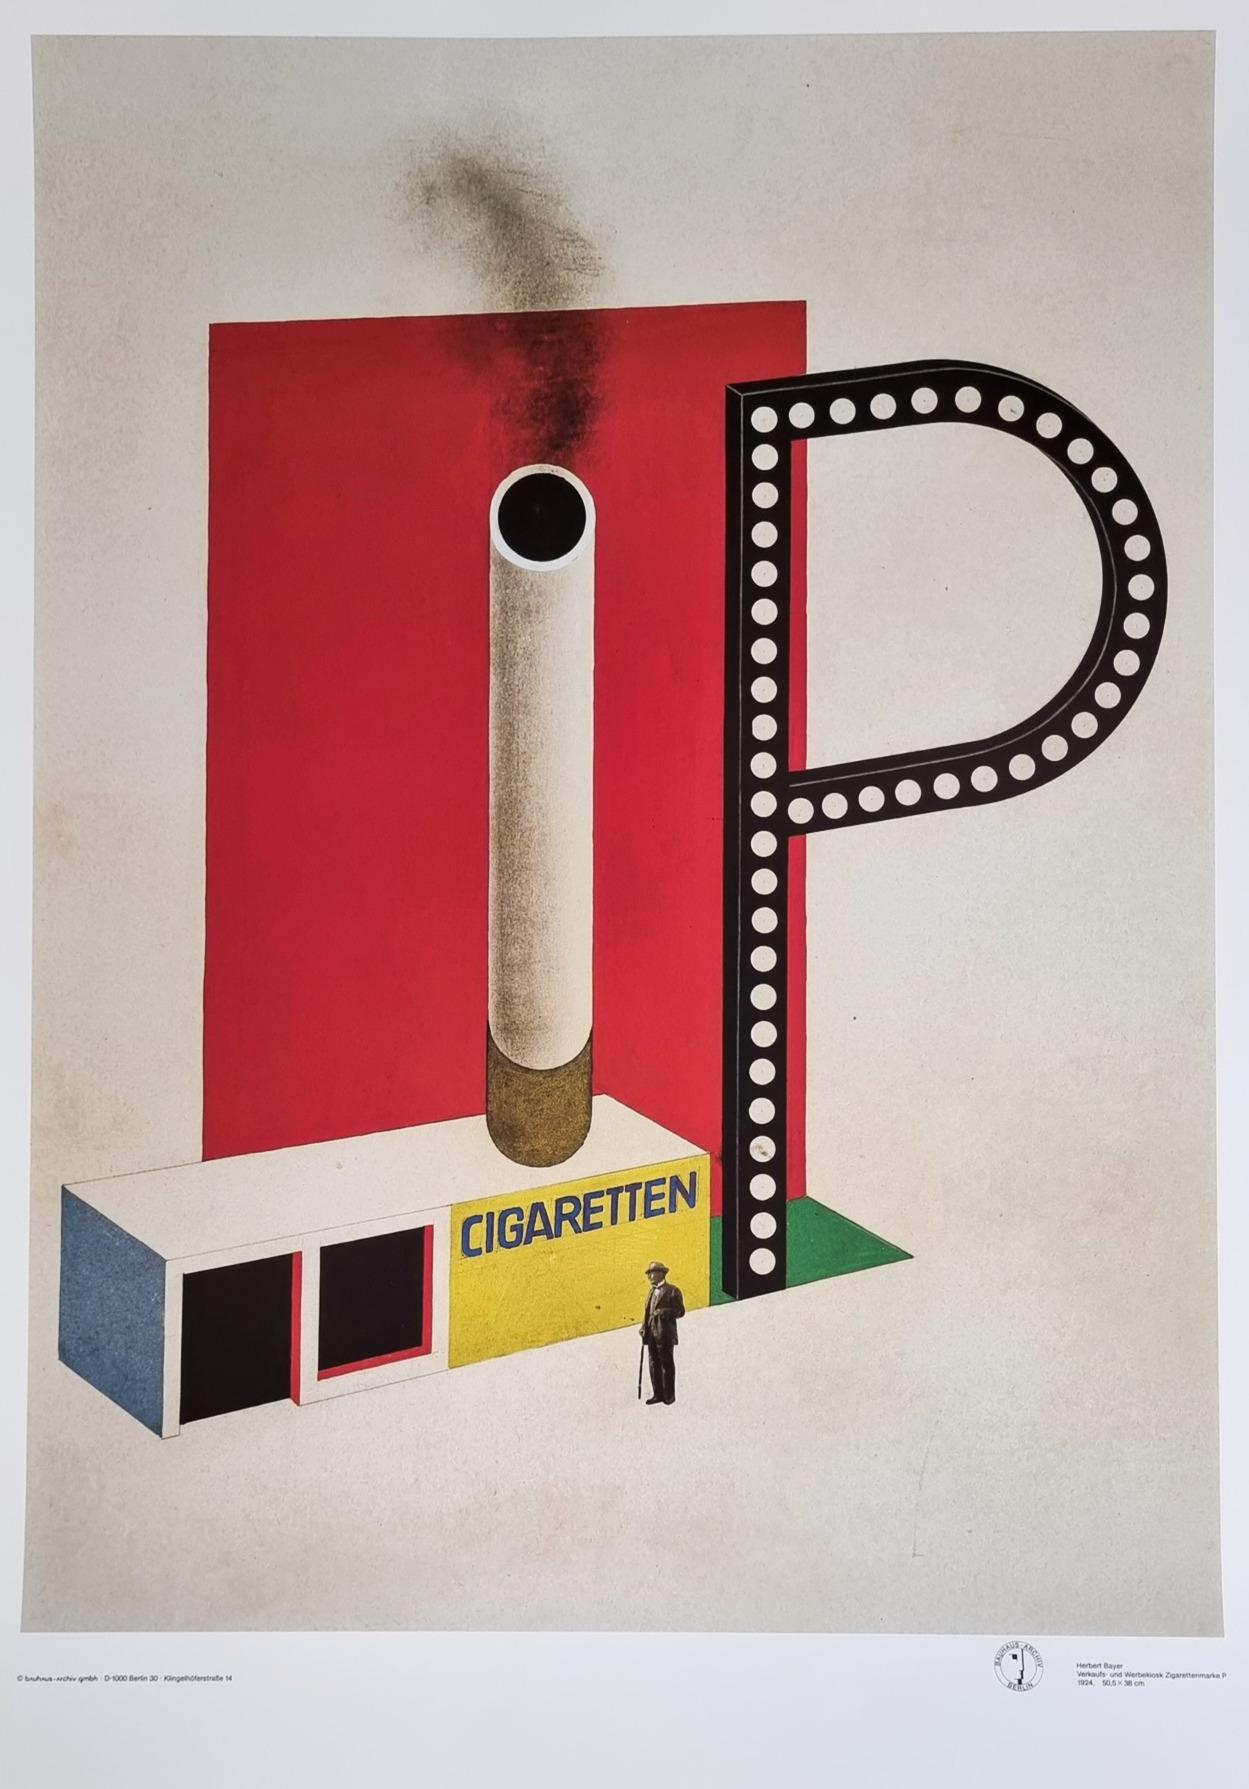 Kiosque de vente et de marketing pour les cigares P (Bauhaus)  (20% remise + expédition gratuite) - Print de Herbert Bayer